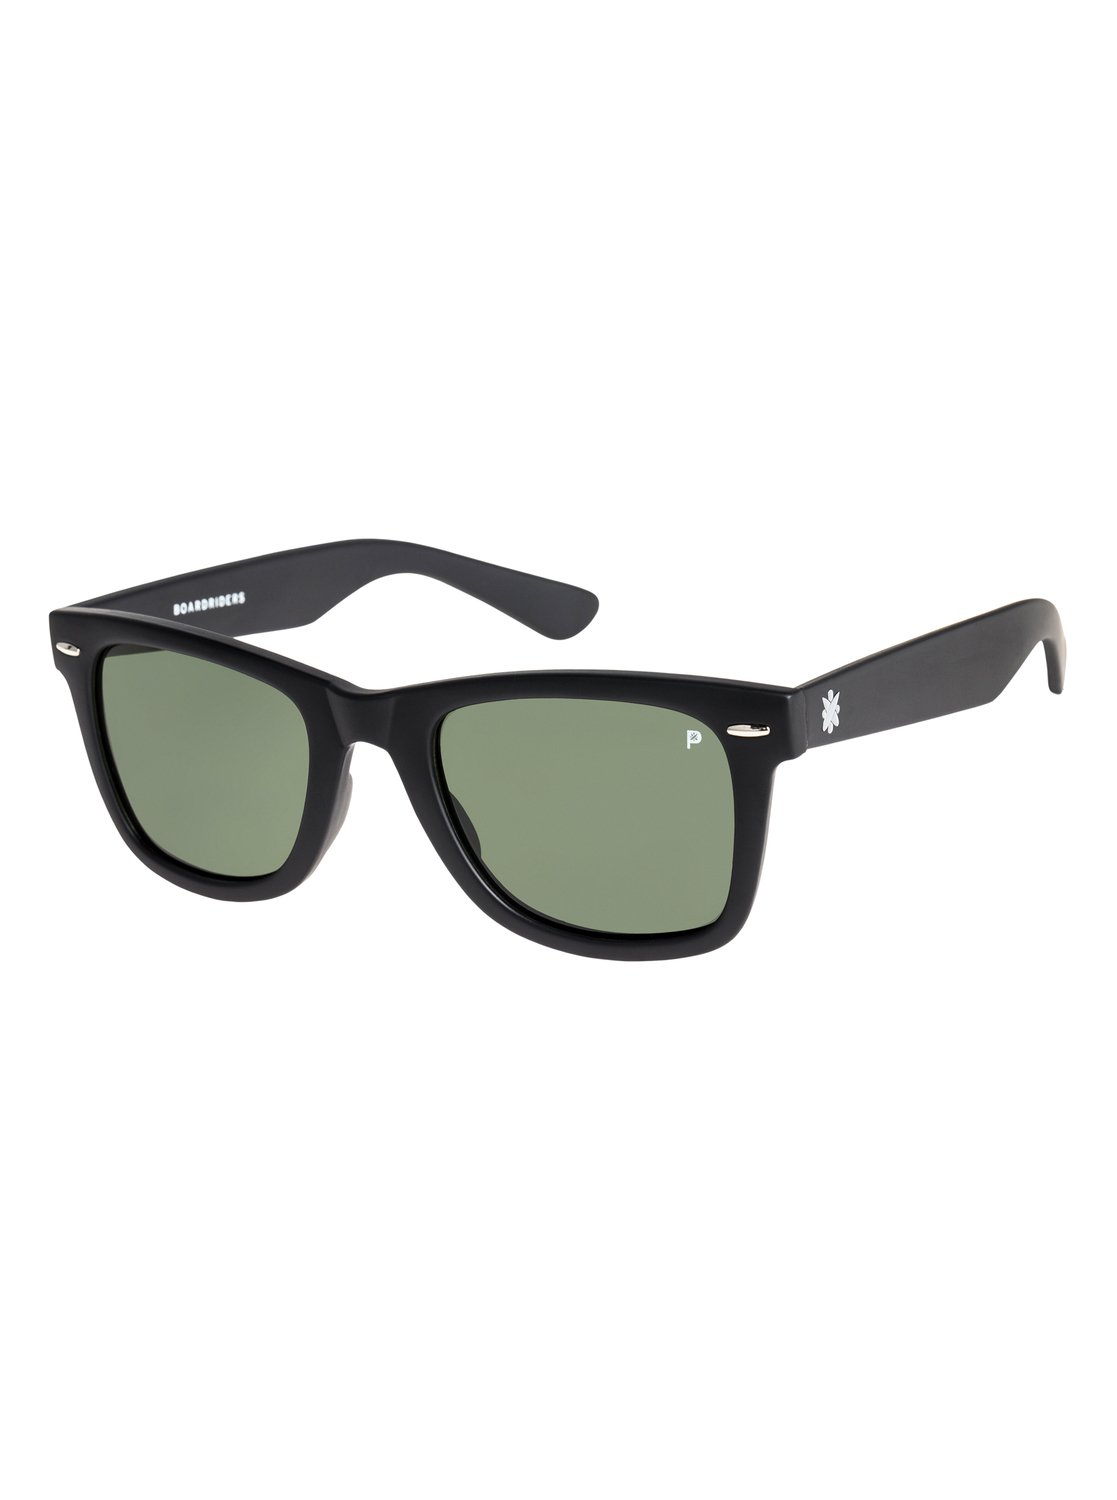 Boardriders Polarized Sunglasses